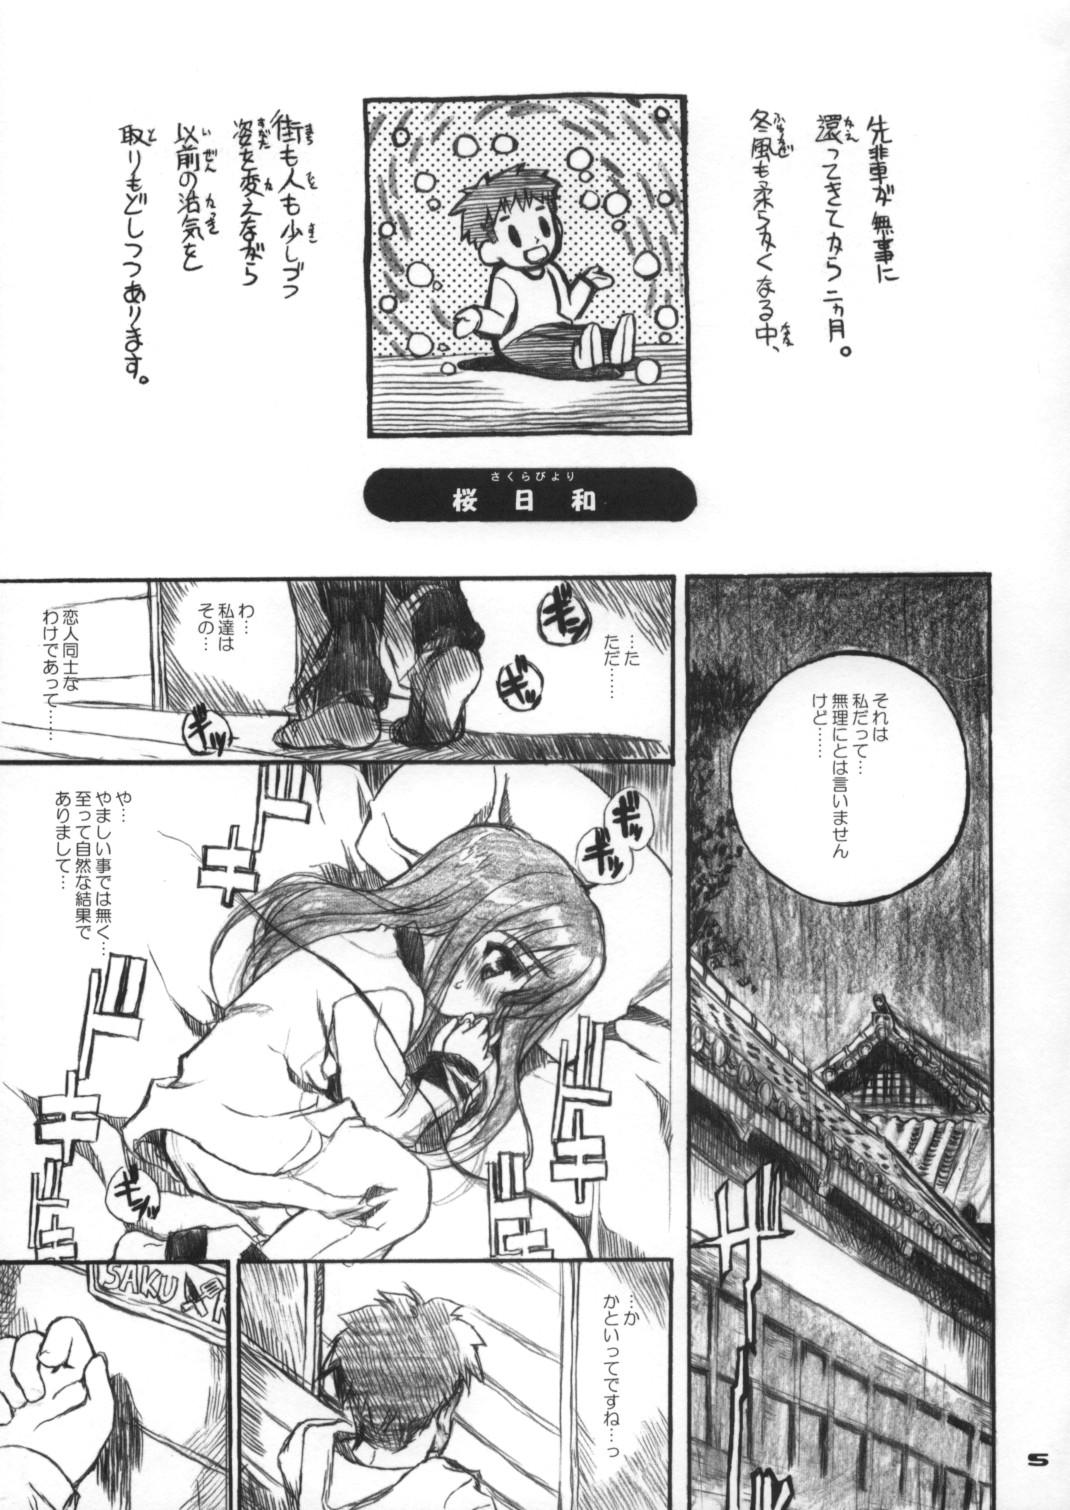 Glasses Neko-bus Tei no Hon Vol.6 Sakurabiyori - Fate stay night For - Page 4